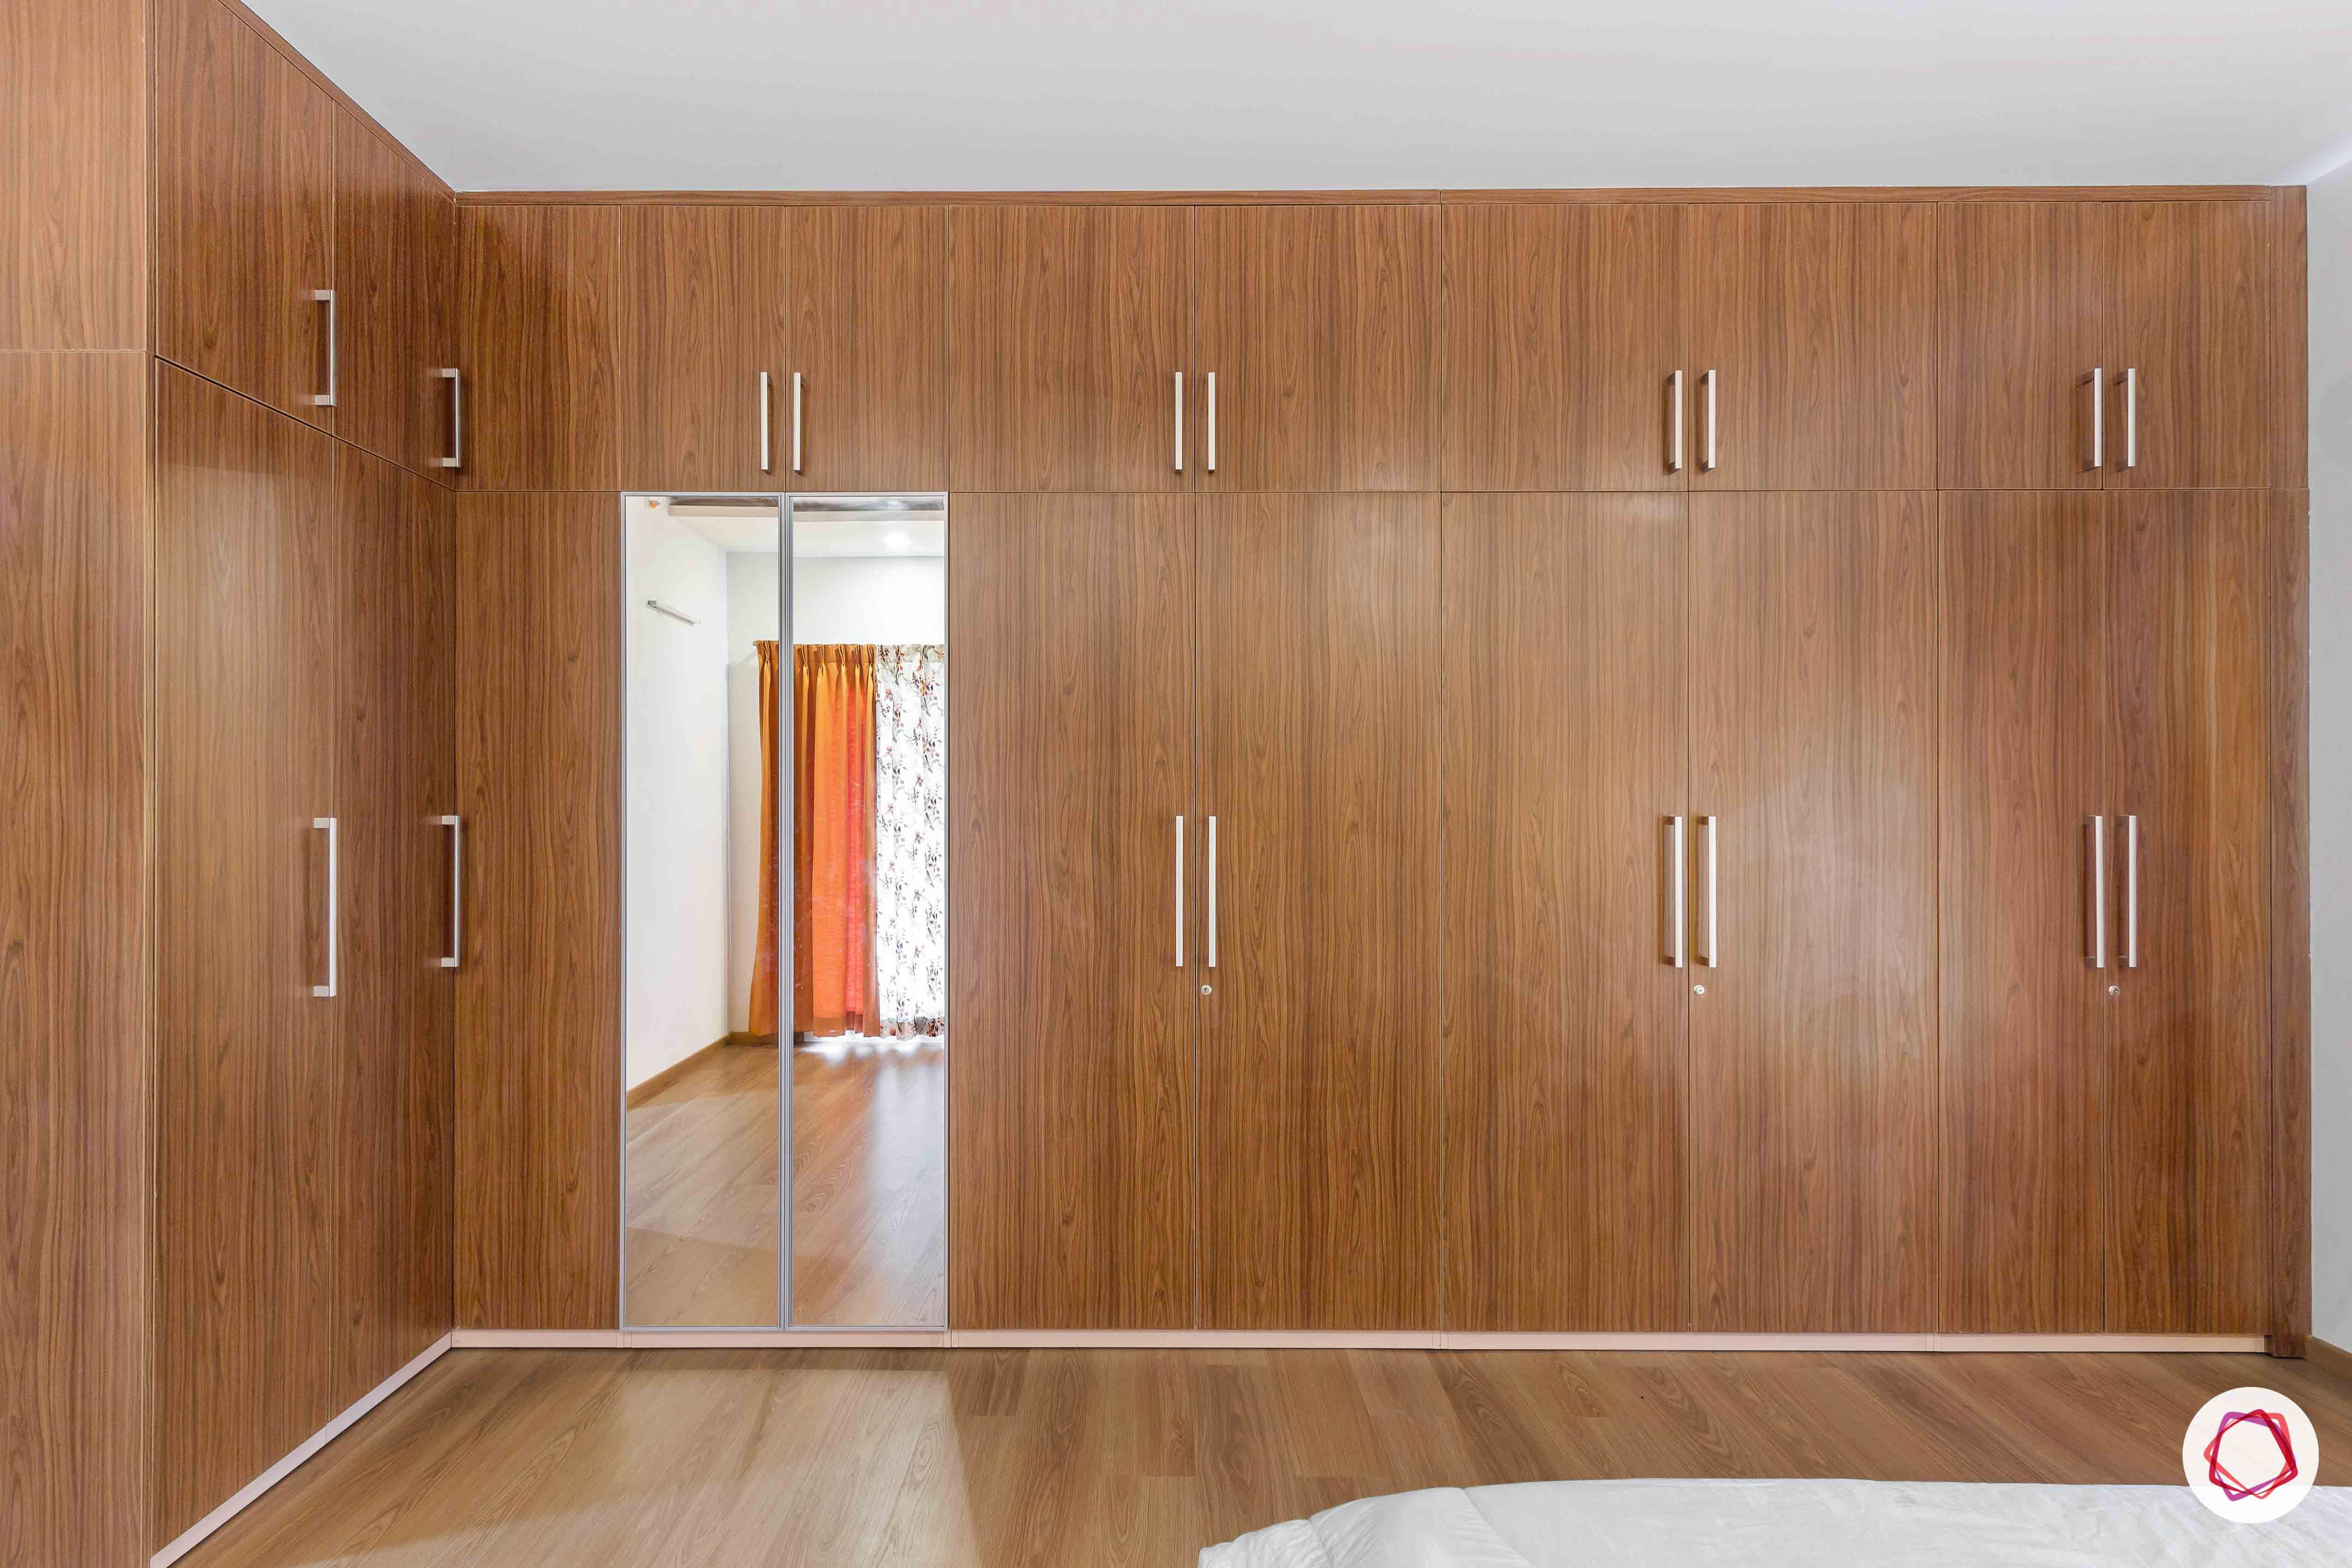 sobha forest view-master bedroom-wooden tones-swing door wardrobes-sleek handles